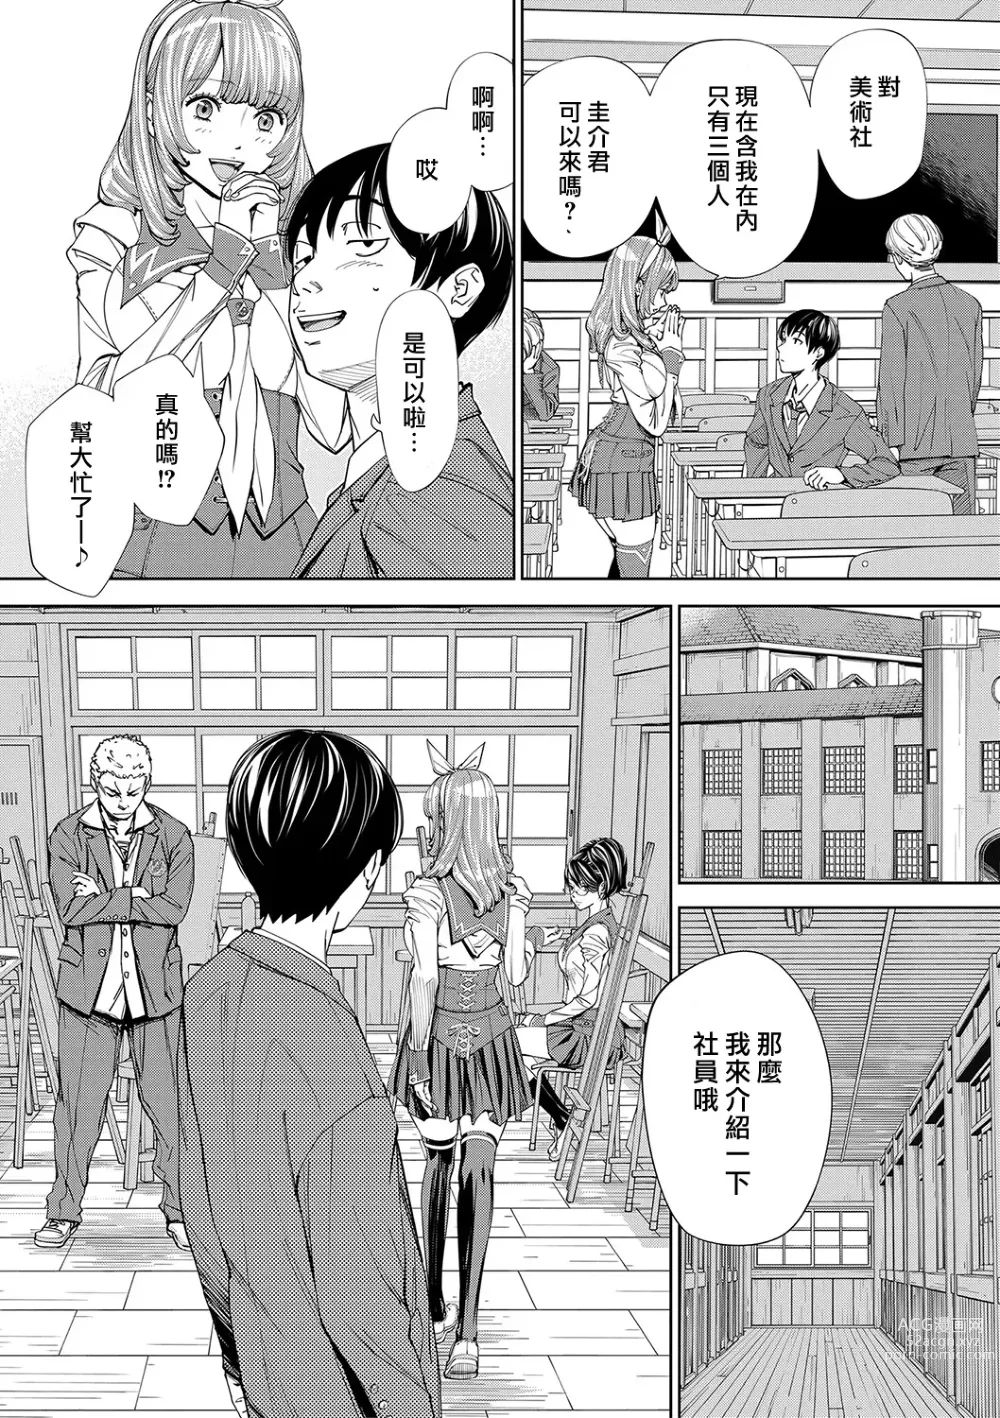 Page 26 of manga Chitose